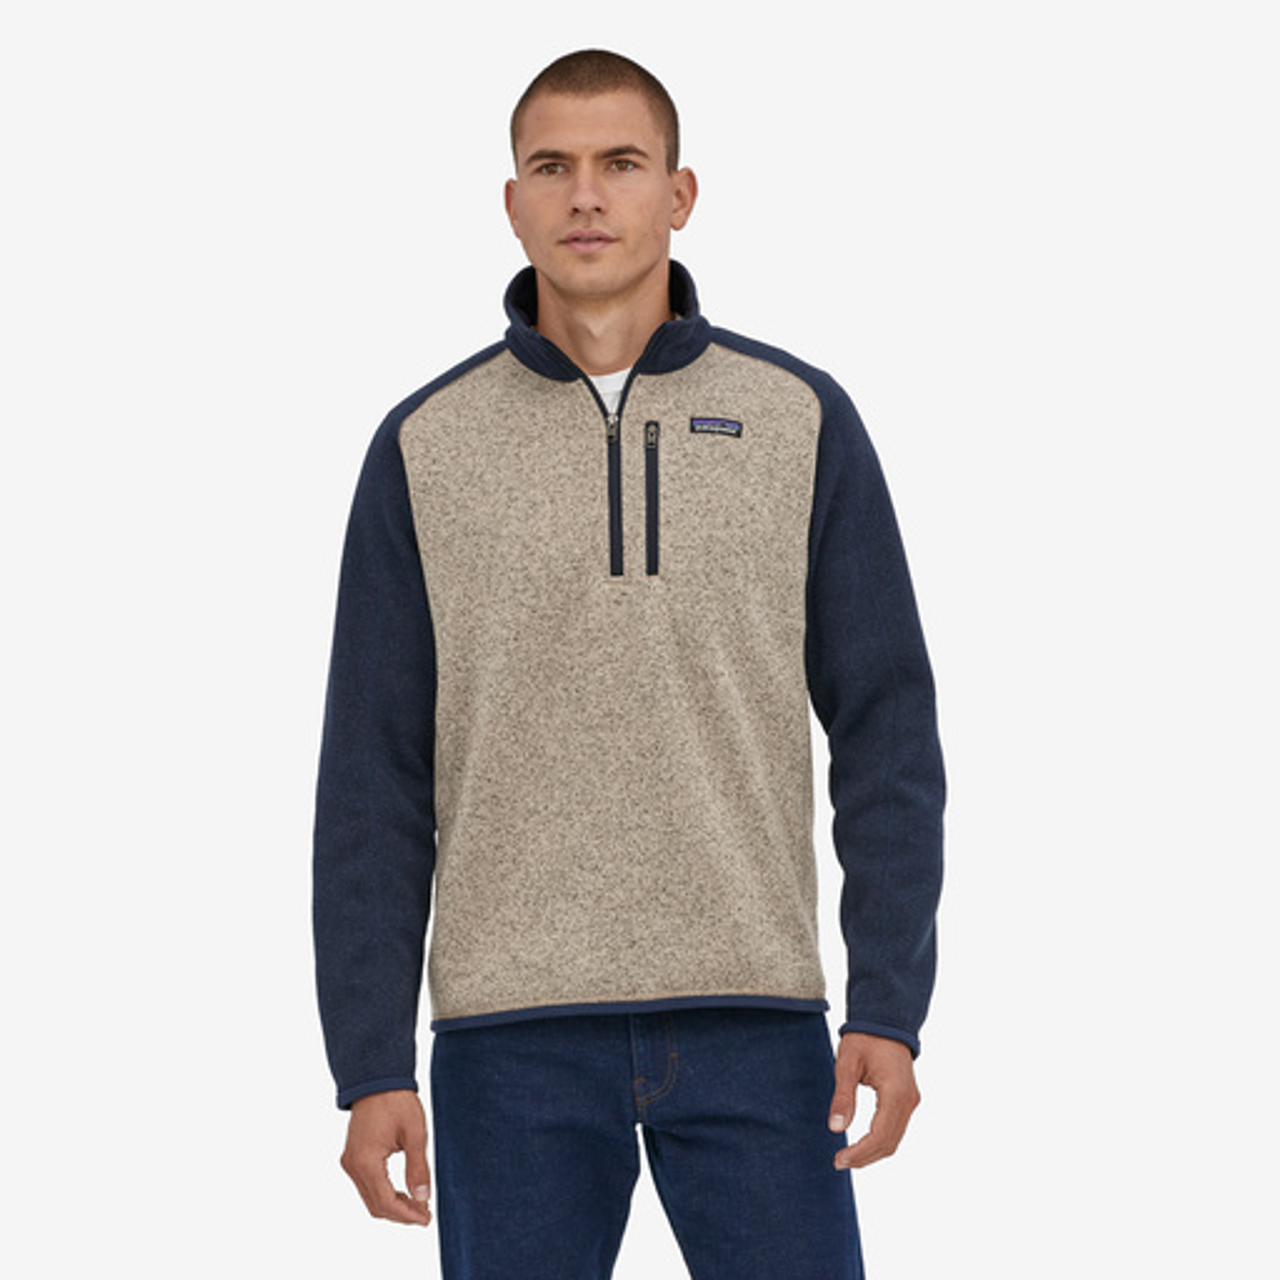 Patagonia Men’s Better Sweater Quarter Zip in Blue/Tan